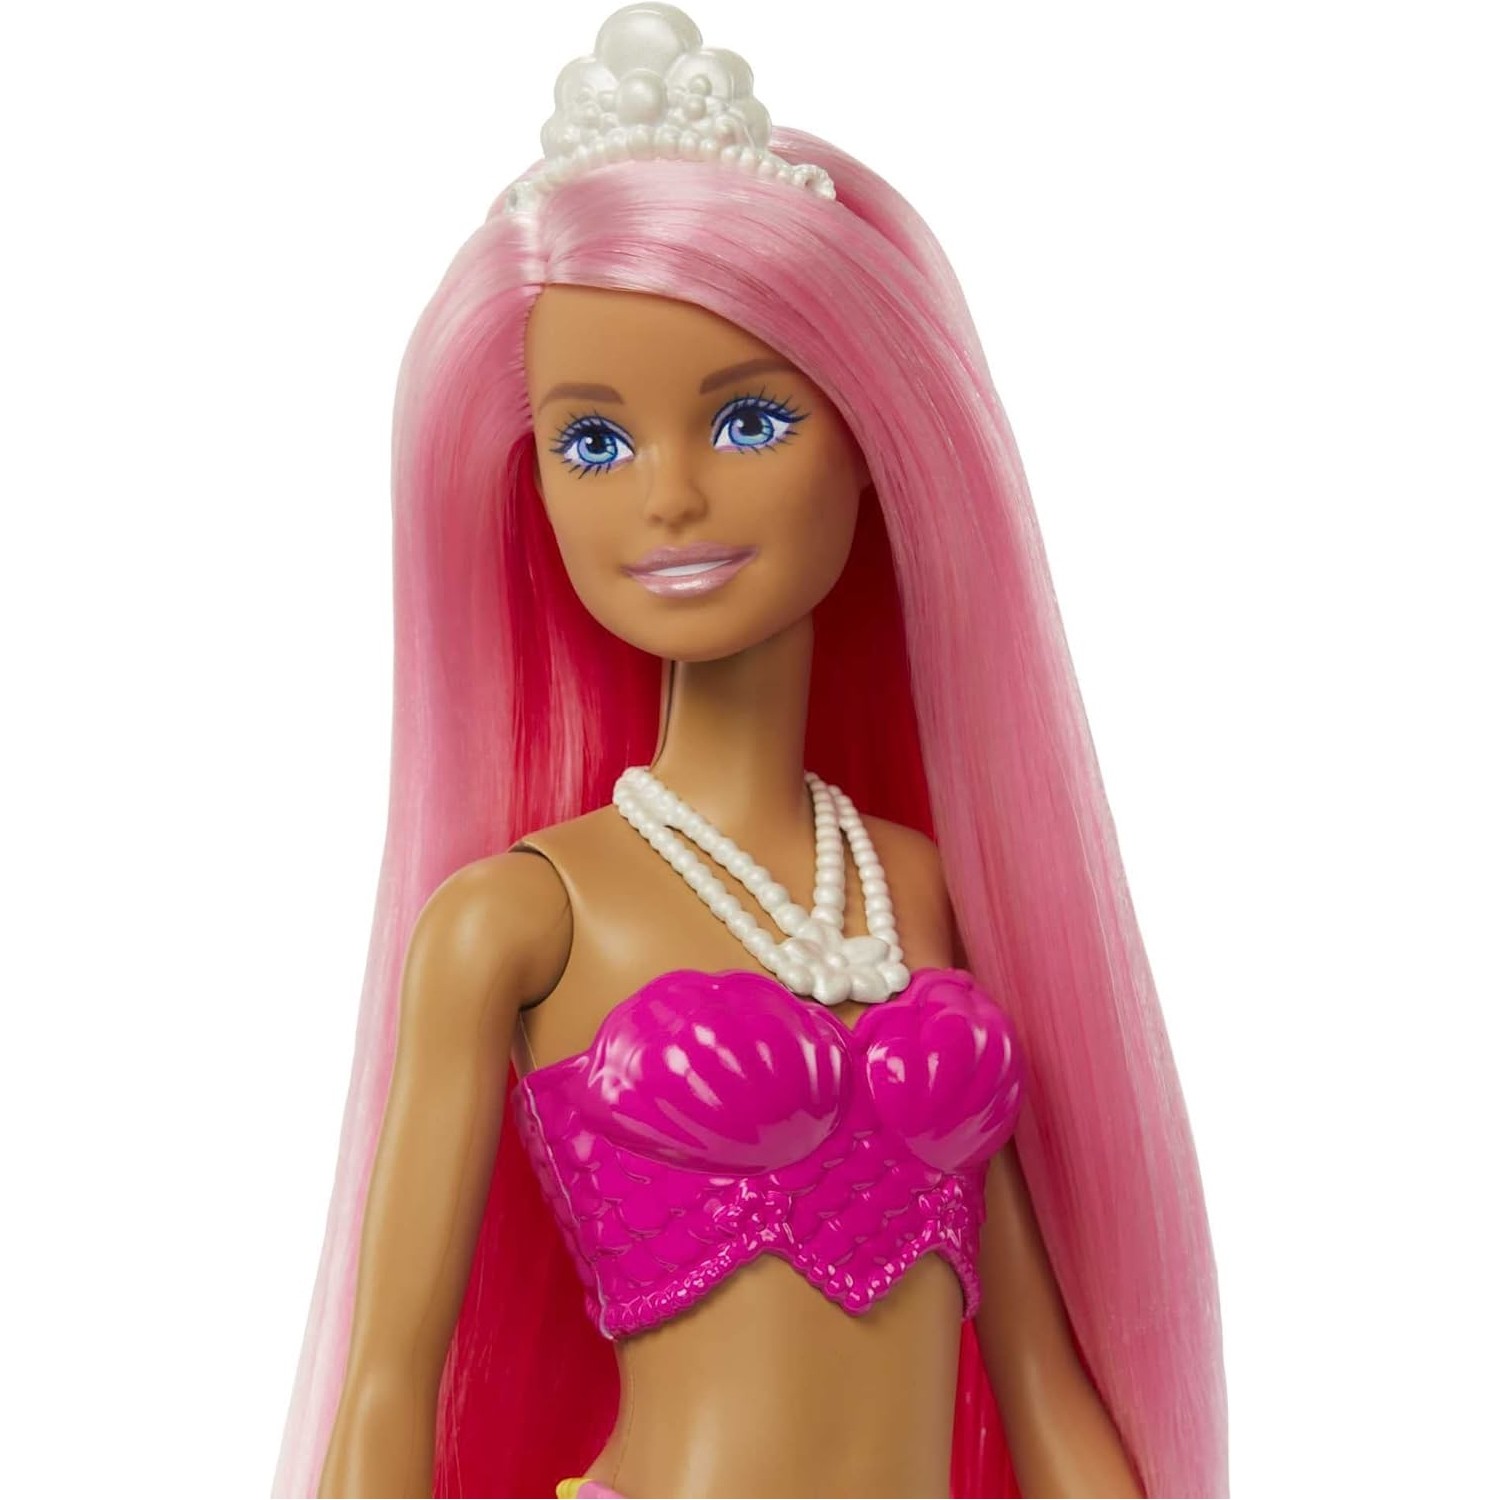 Кукла Barbie Dreamtopia Новые куклы русалки HGR11 куклы barbie русалки dreamtopia hgr09